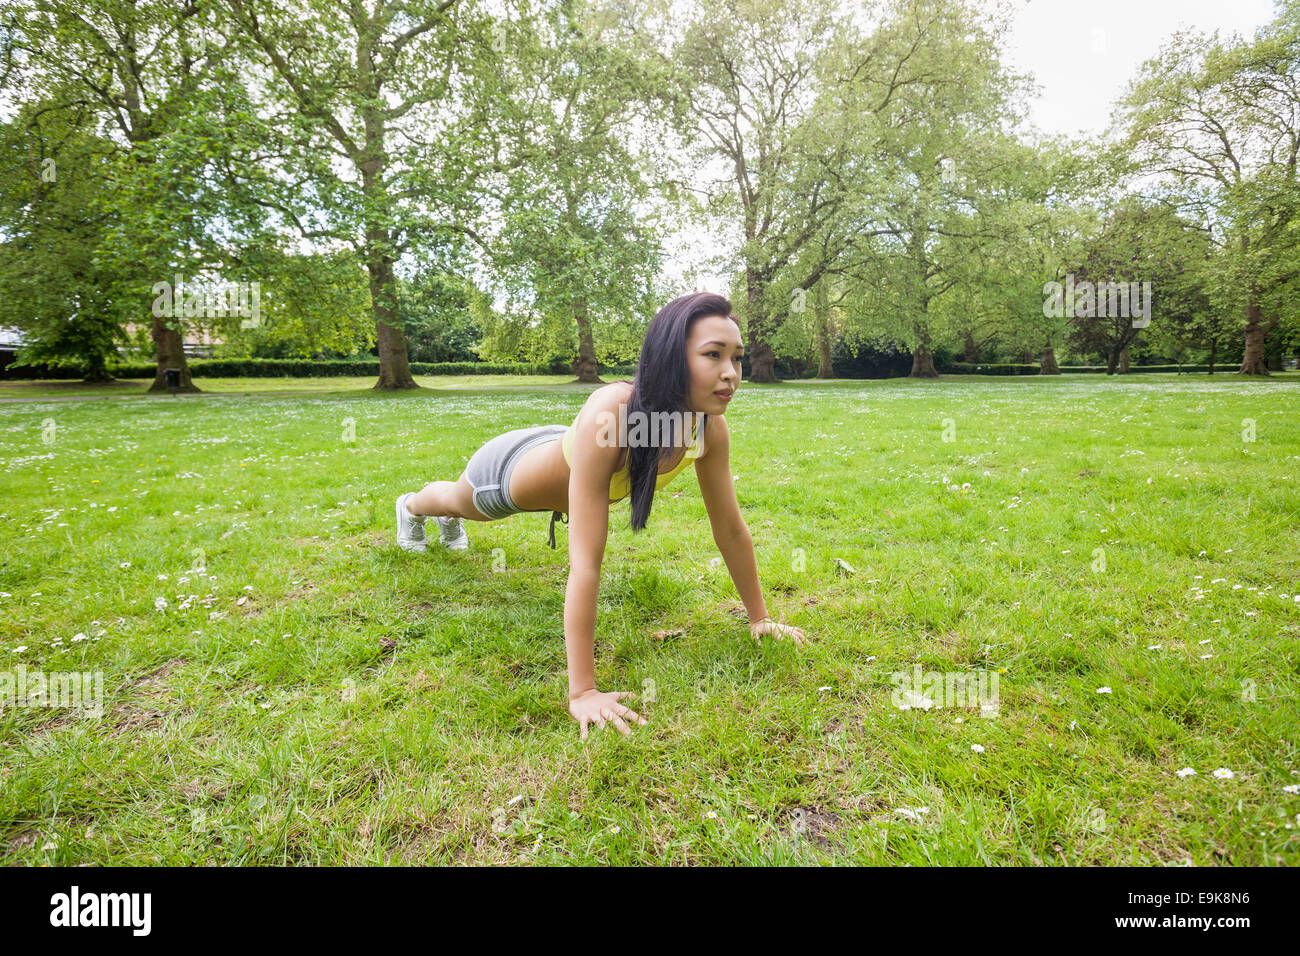 Longueur totale de jeunes fit woman performing pushups at park Banque D'Images